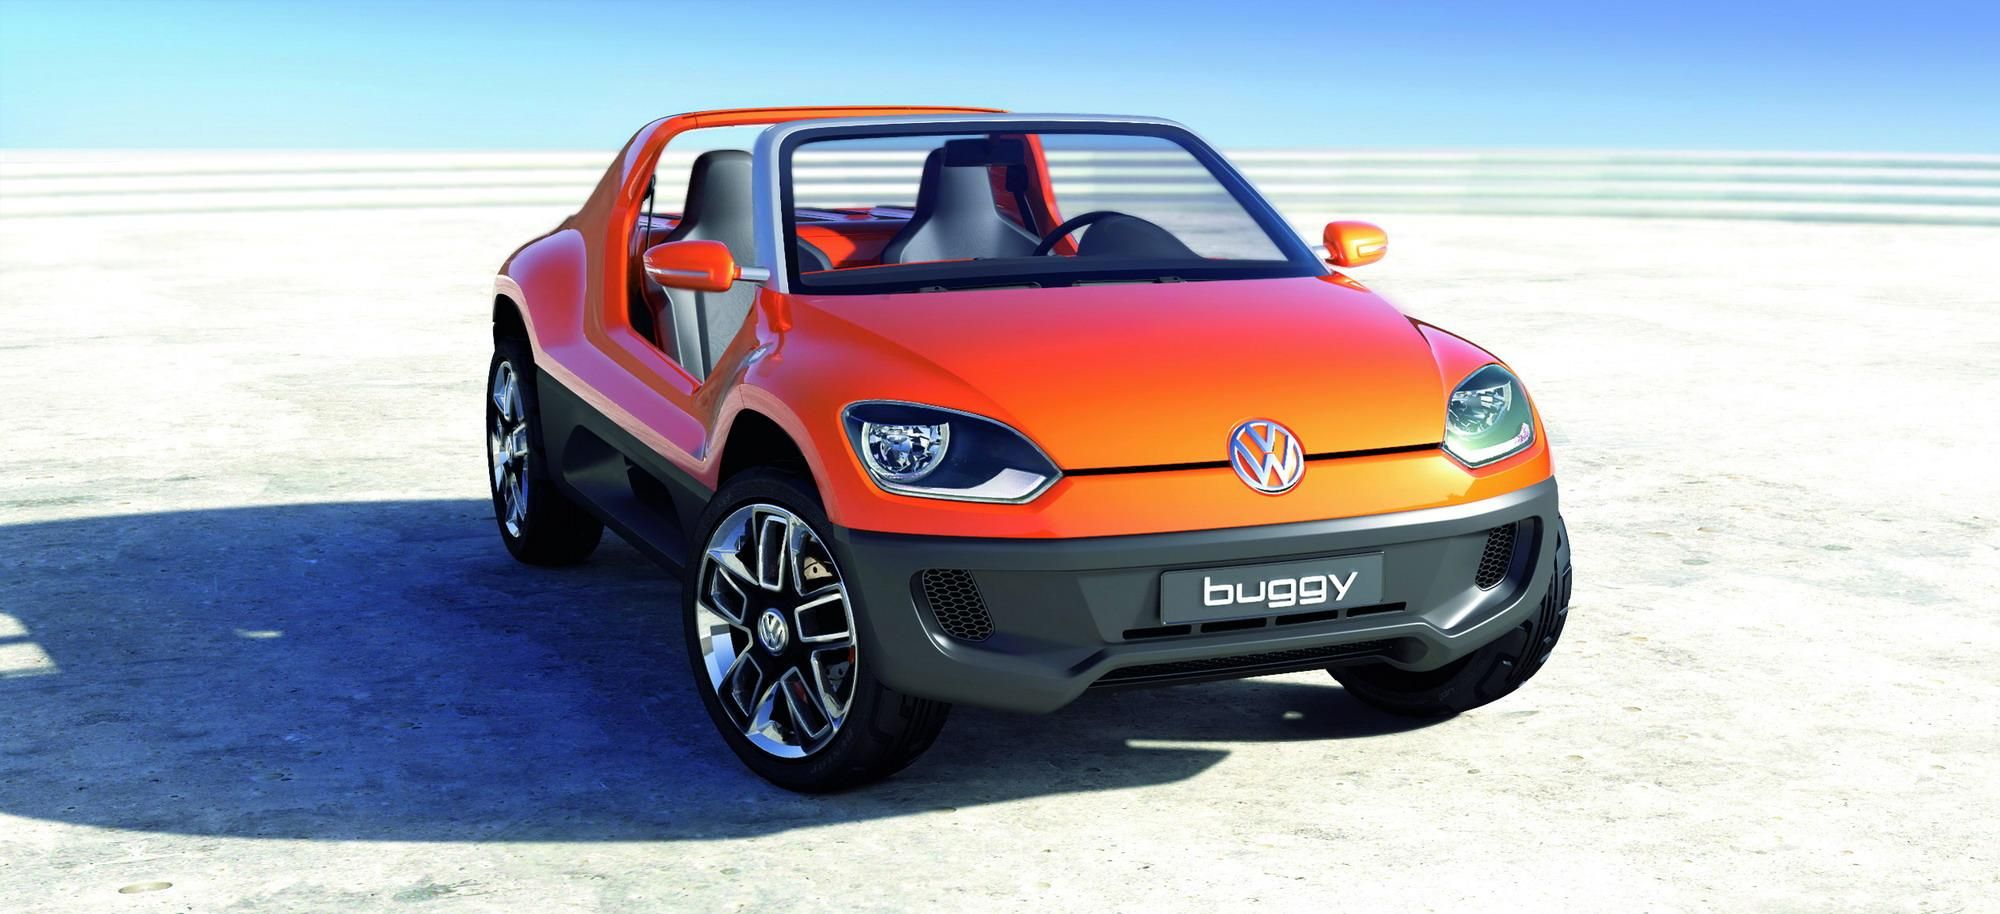 2011 Volkswagen study buggy up!